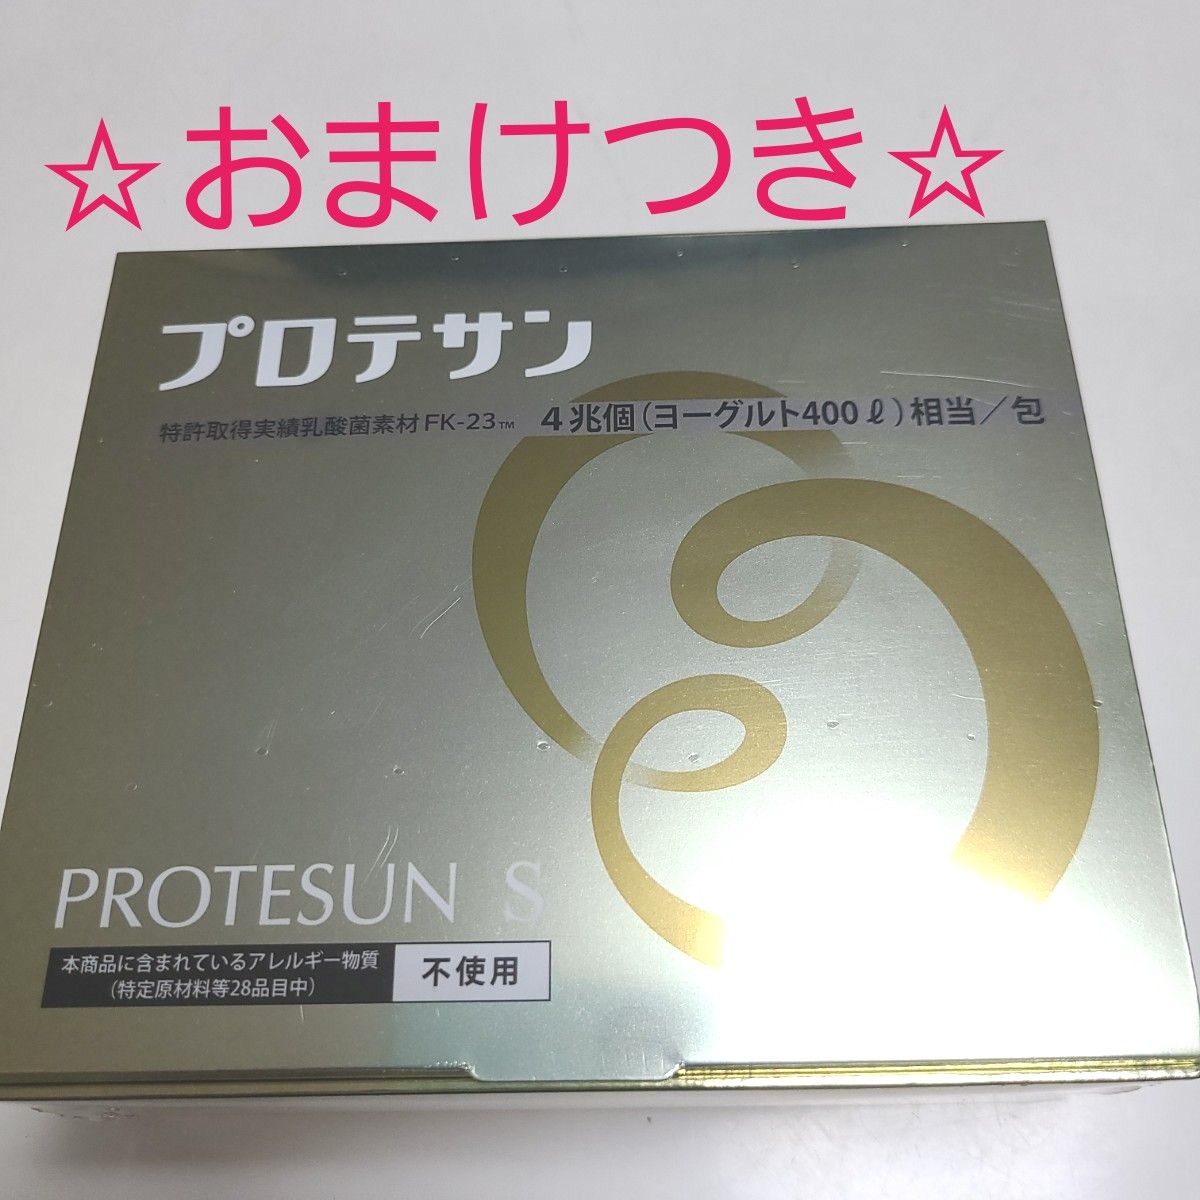 プロテサンS 62包入 ニチニチ製薬 新品未開封品 【おまけ】つき